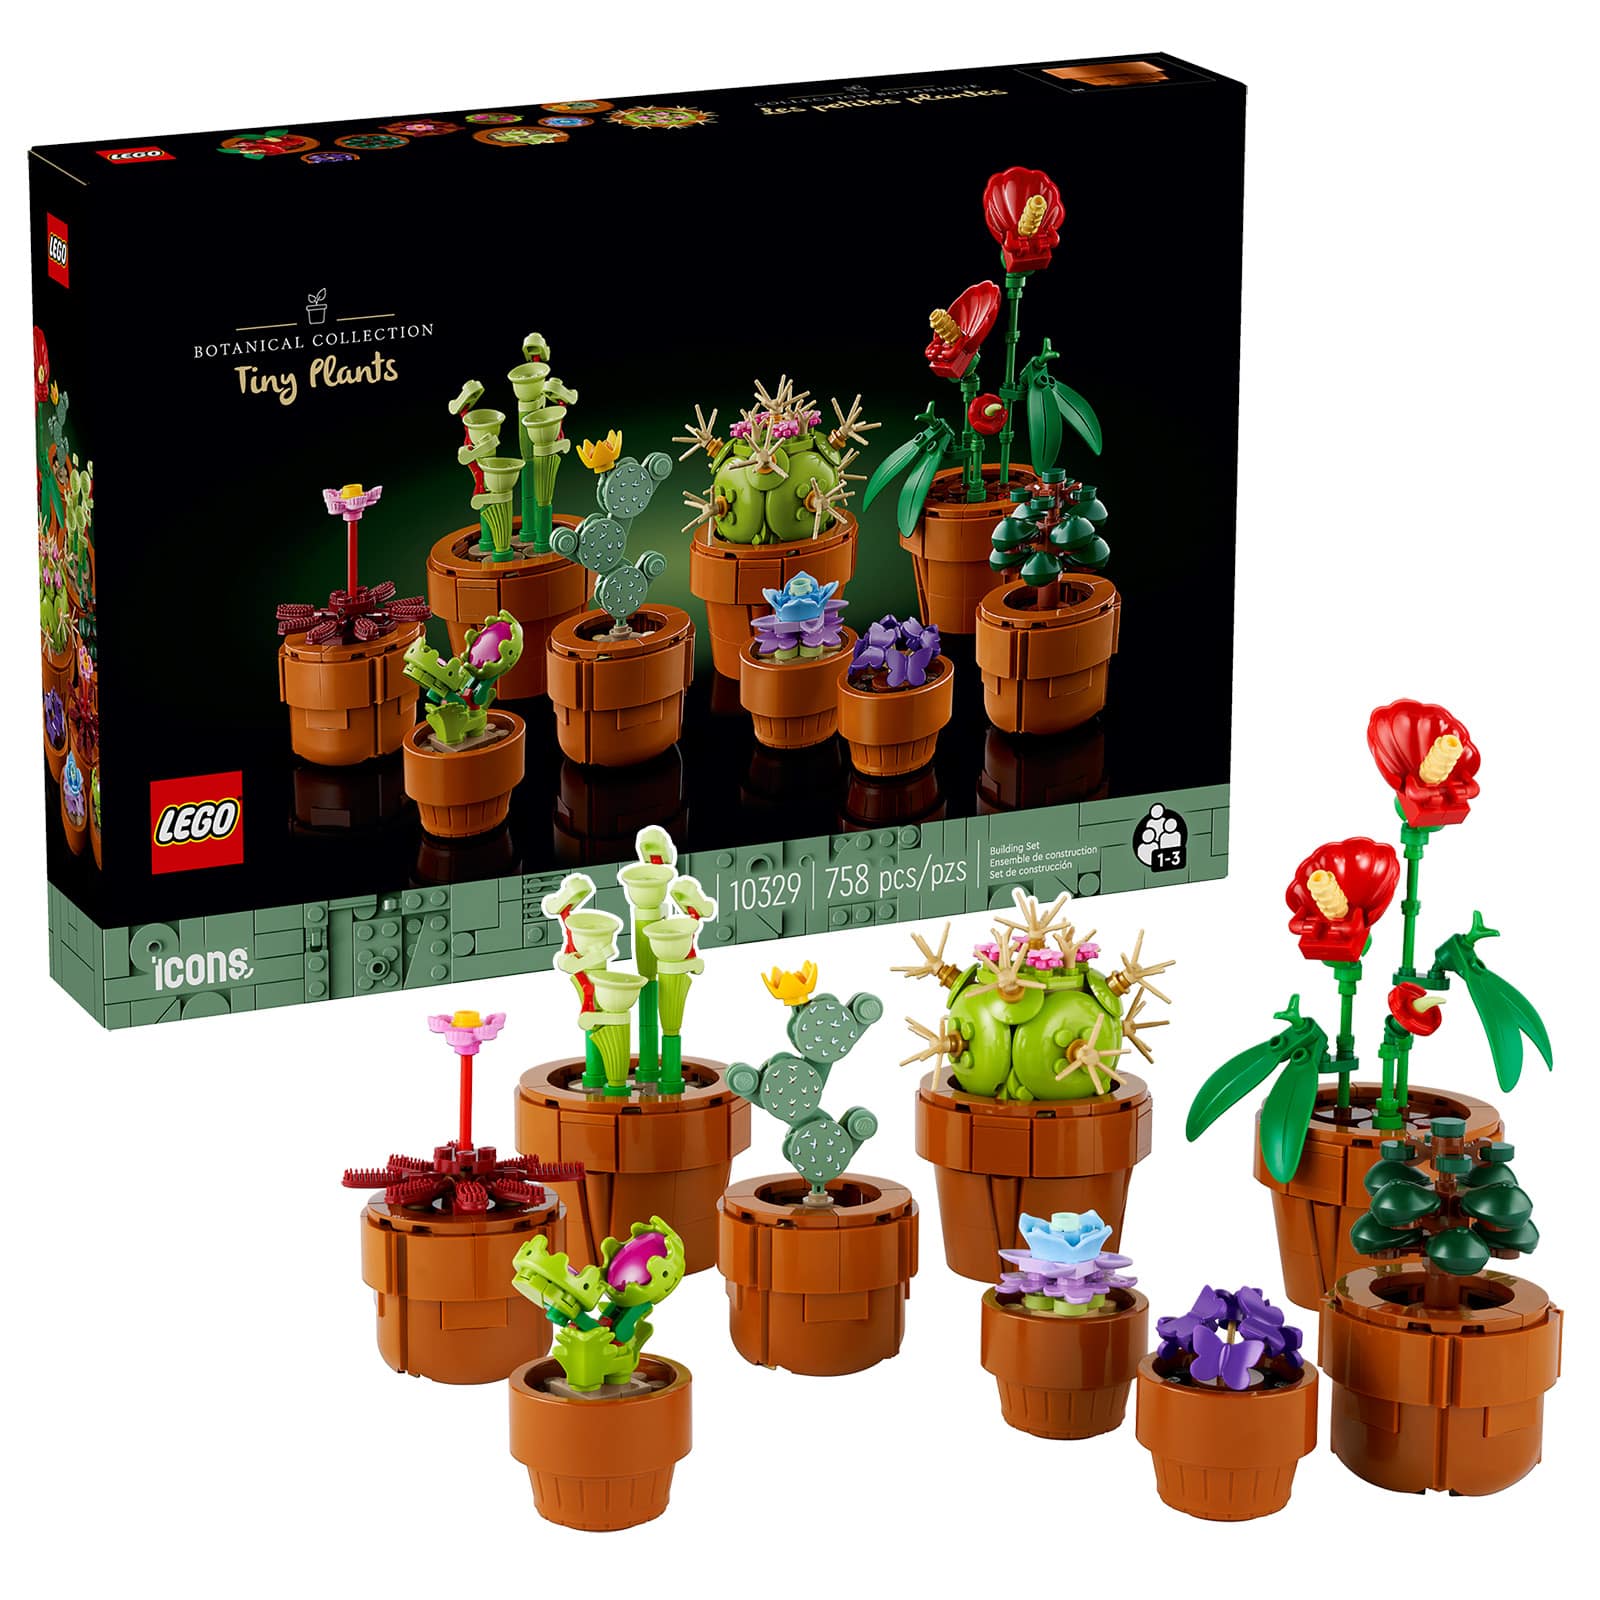 ▻ LEGO ICONS Botanical Collection 10329 Tiny Plants : le set est